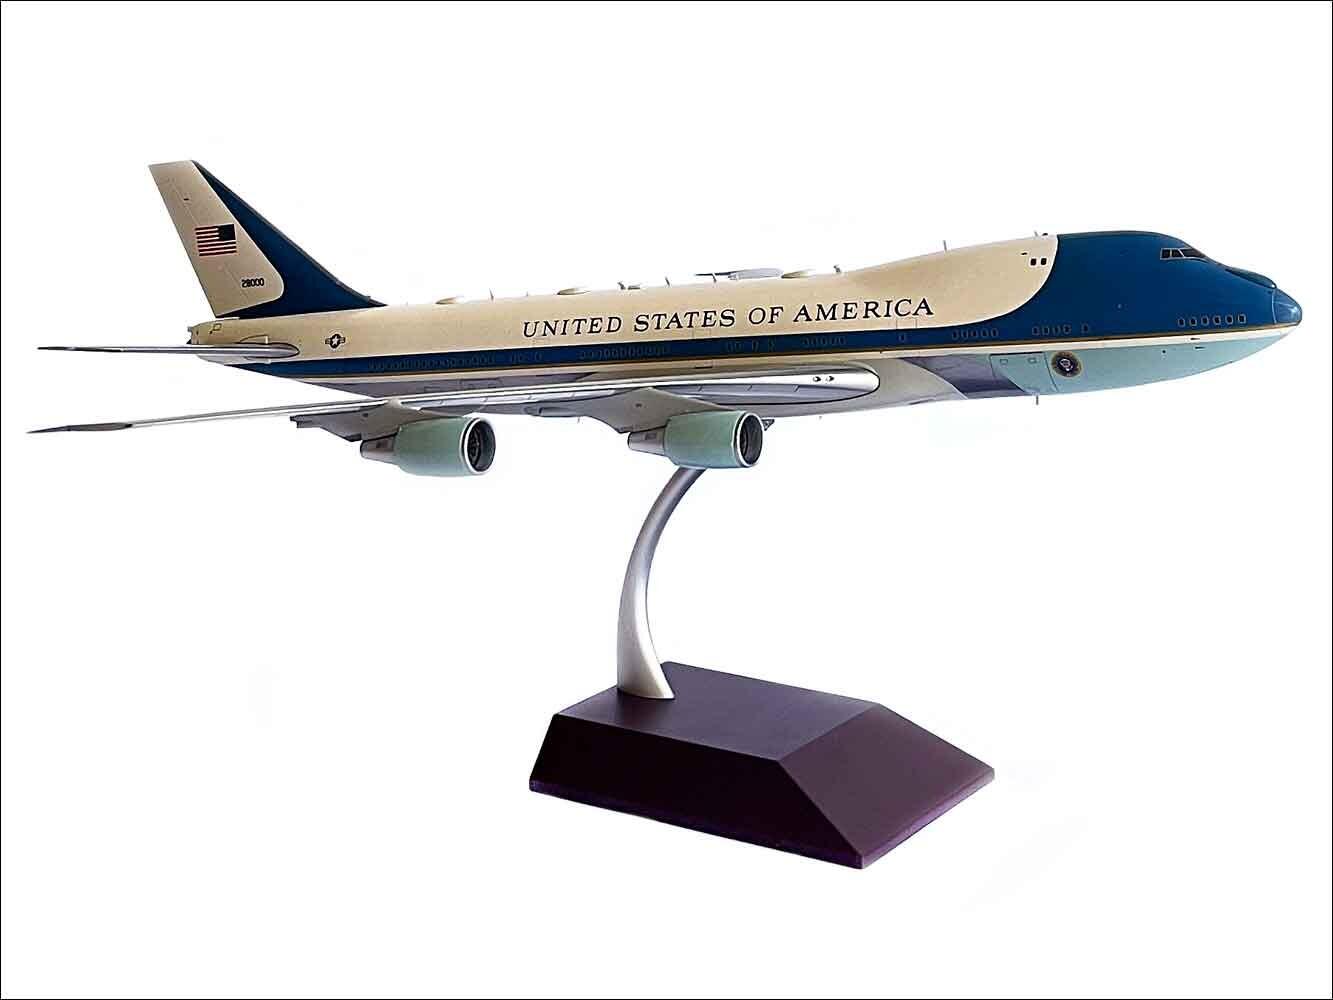 USAF Boeing 747 model for display